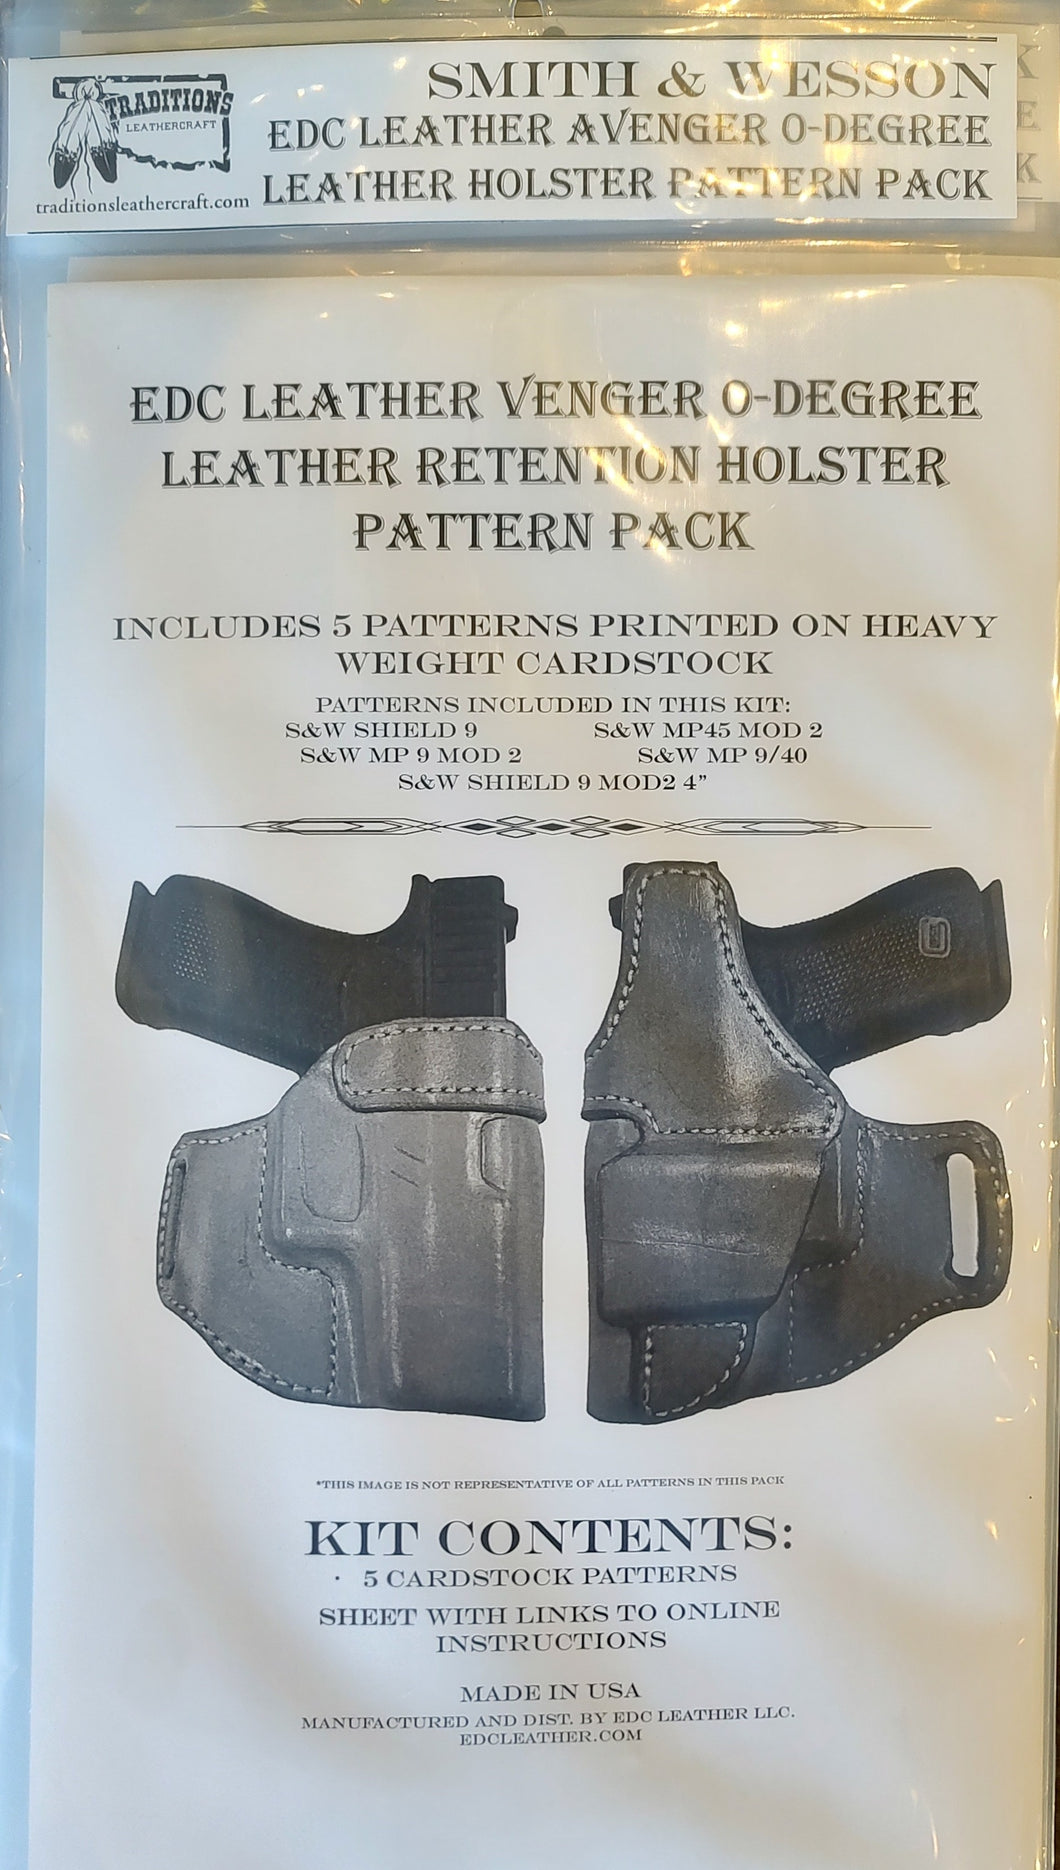 EDC Leather Avenger 0-Degree Leather Retention Holster Pattern Pack